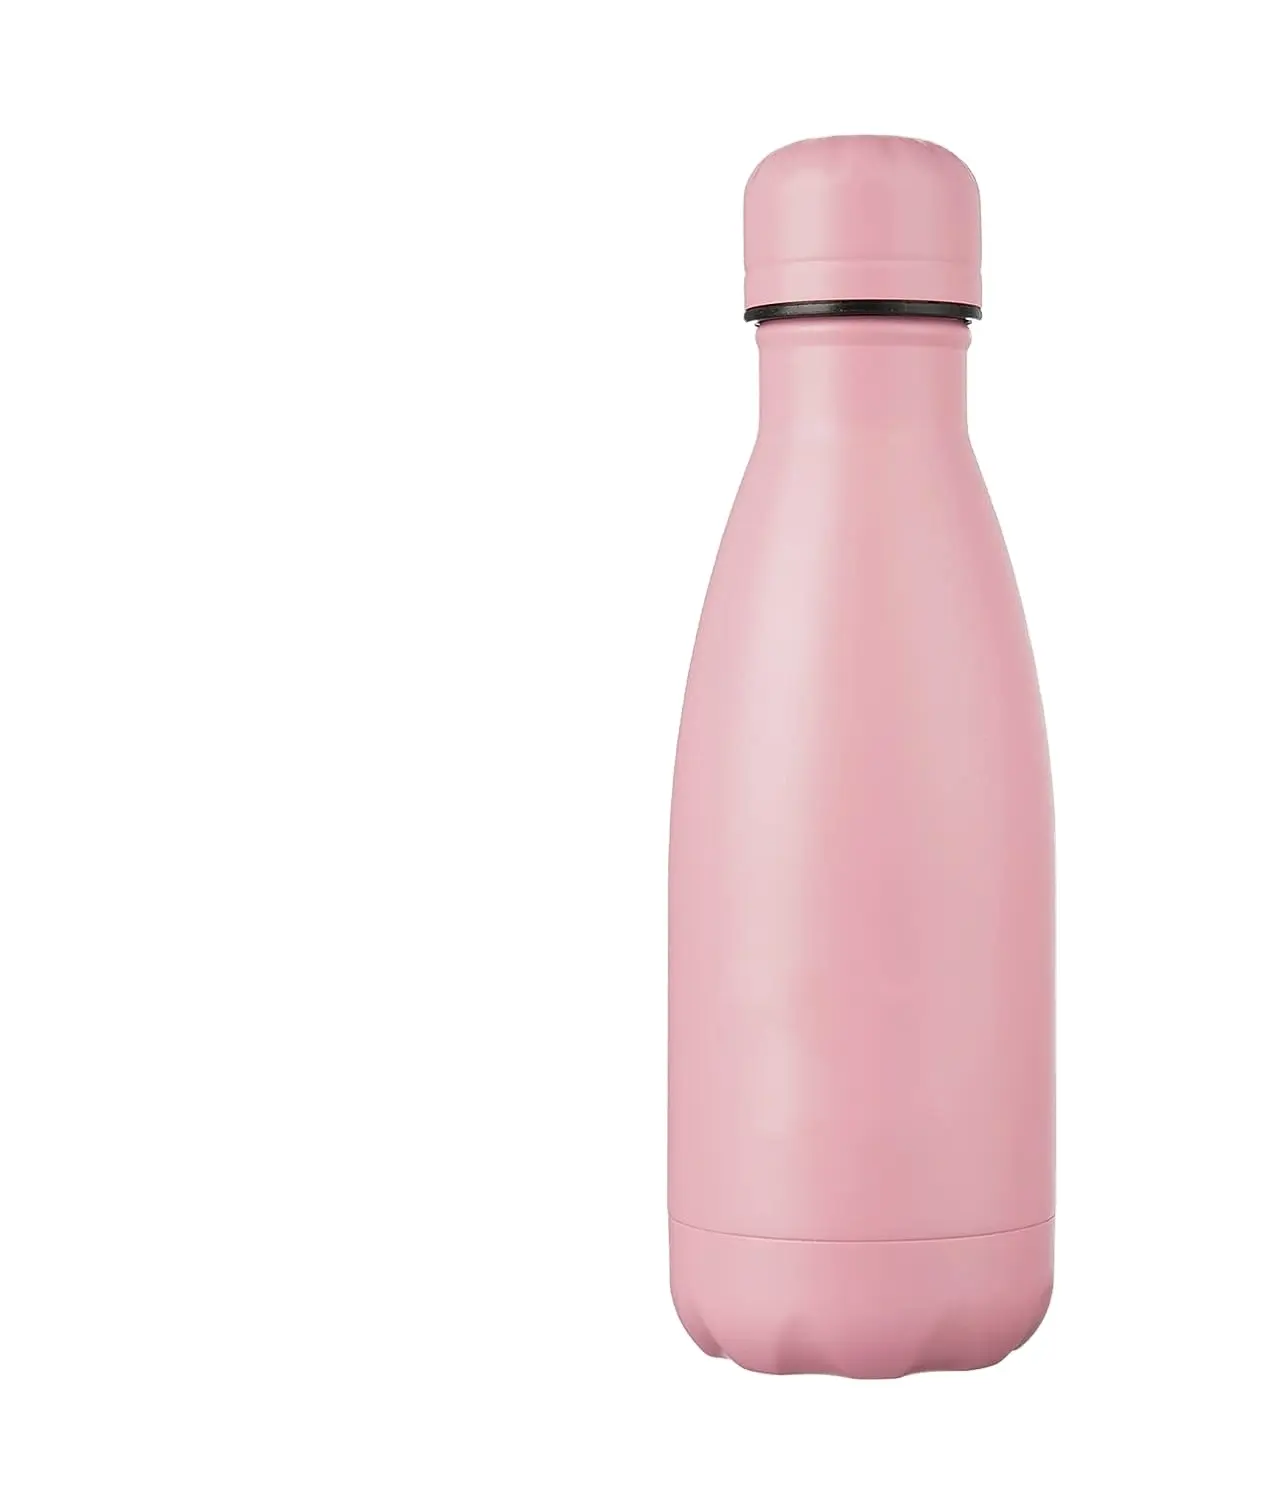 زجاجة مياه معزولة 12 أونصة زجاجة ماء للأطفال للمدرسة تحافظ على برودة اللون الوردي الساخن